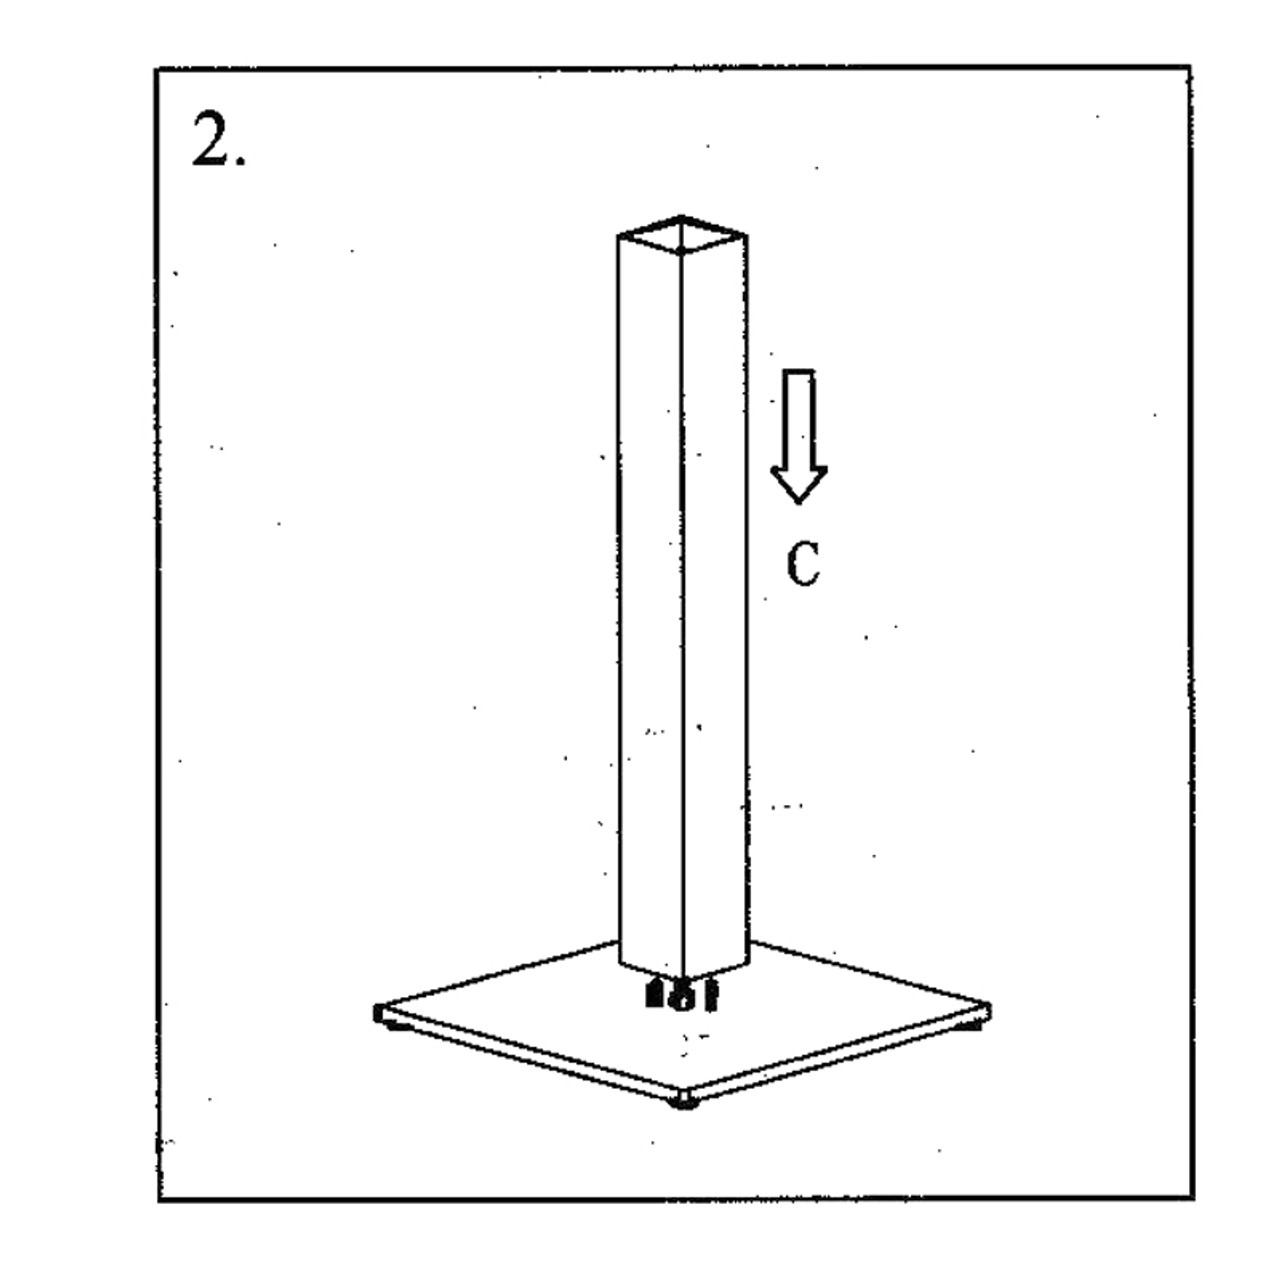 Diagram - Sliding column (C) over rod (D)